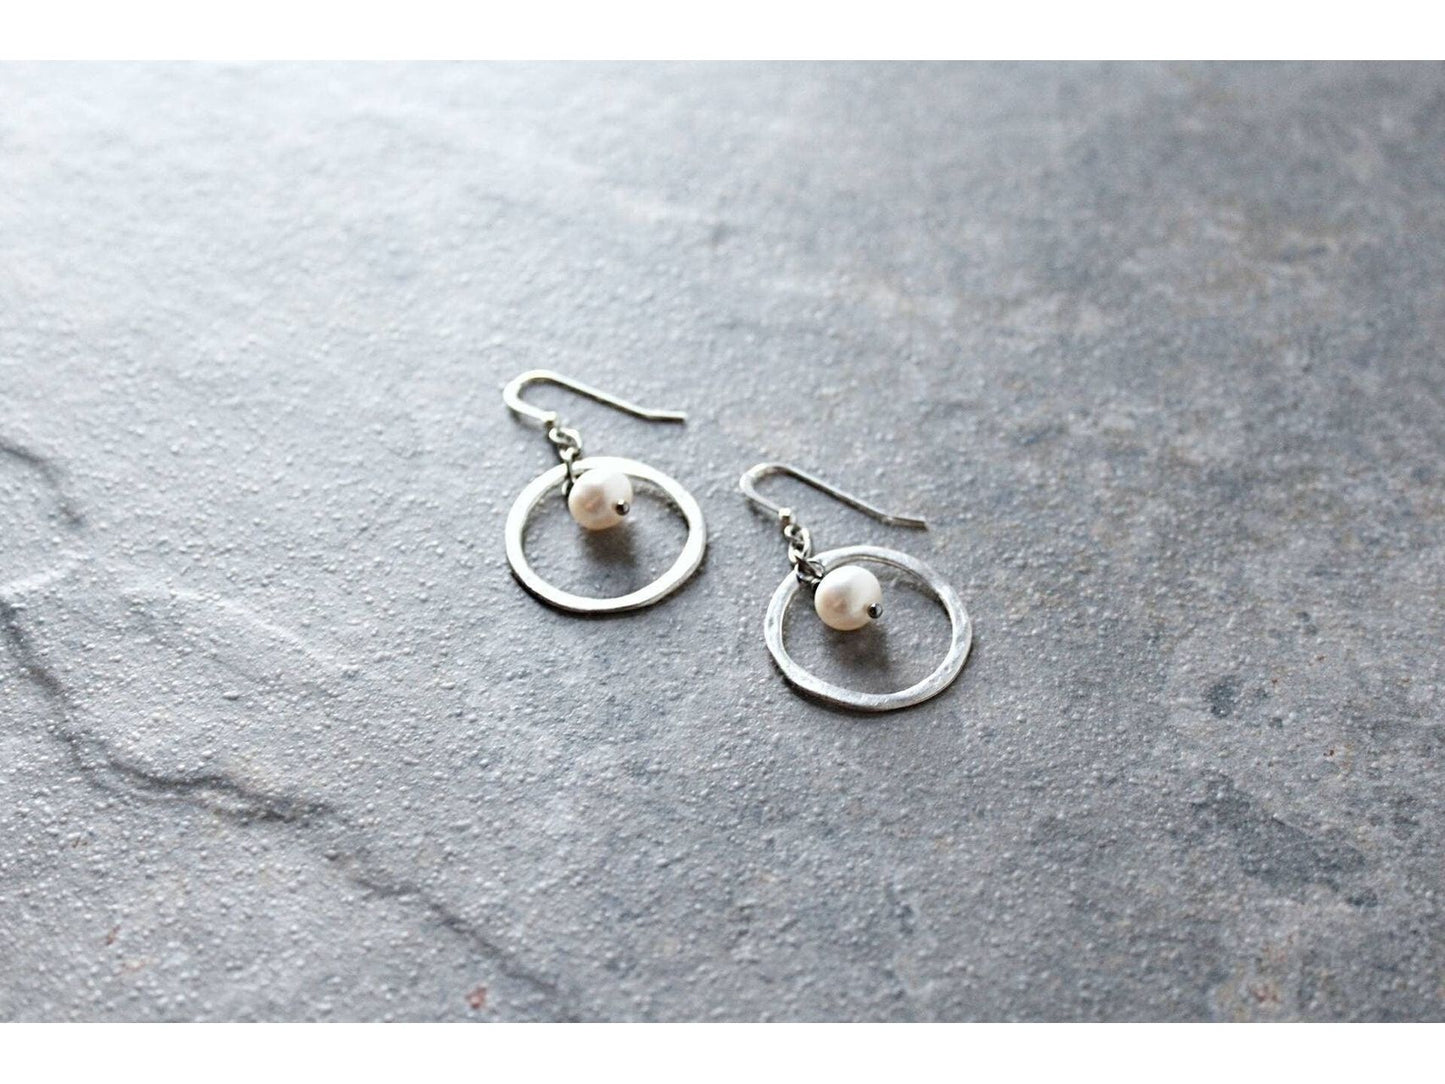 Hoop earrings with pearl charm, Hammered hoop earrings, Pearl earrings